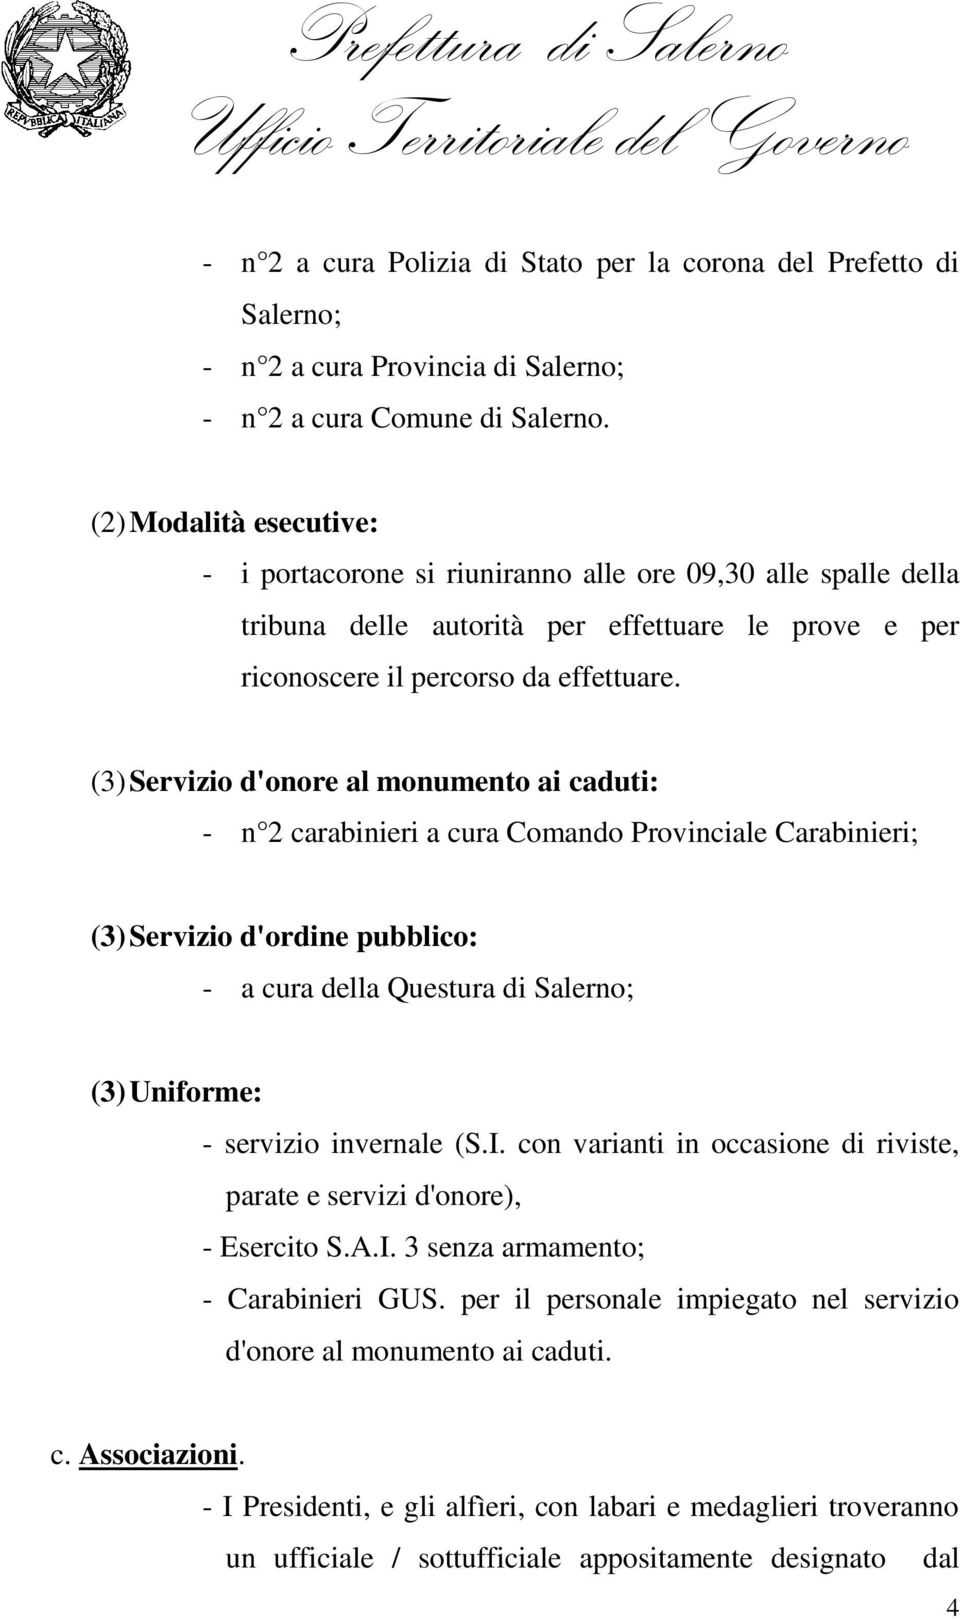 (3) Servizio d'onore al monumento ai caduti: - n 2 carabinieri a cura Comando Provinciale Carabinieri; (3) Servizio d'ordine pubblico: - a cura della Questura di Salerno; (3) Uniforme: - servizio